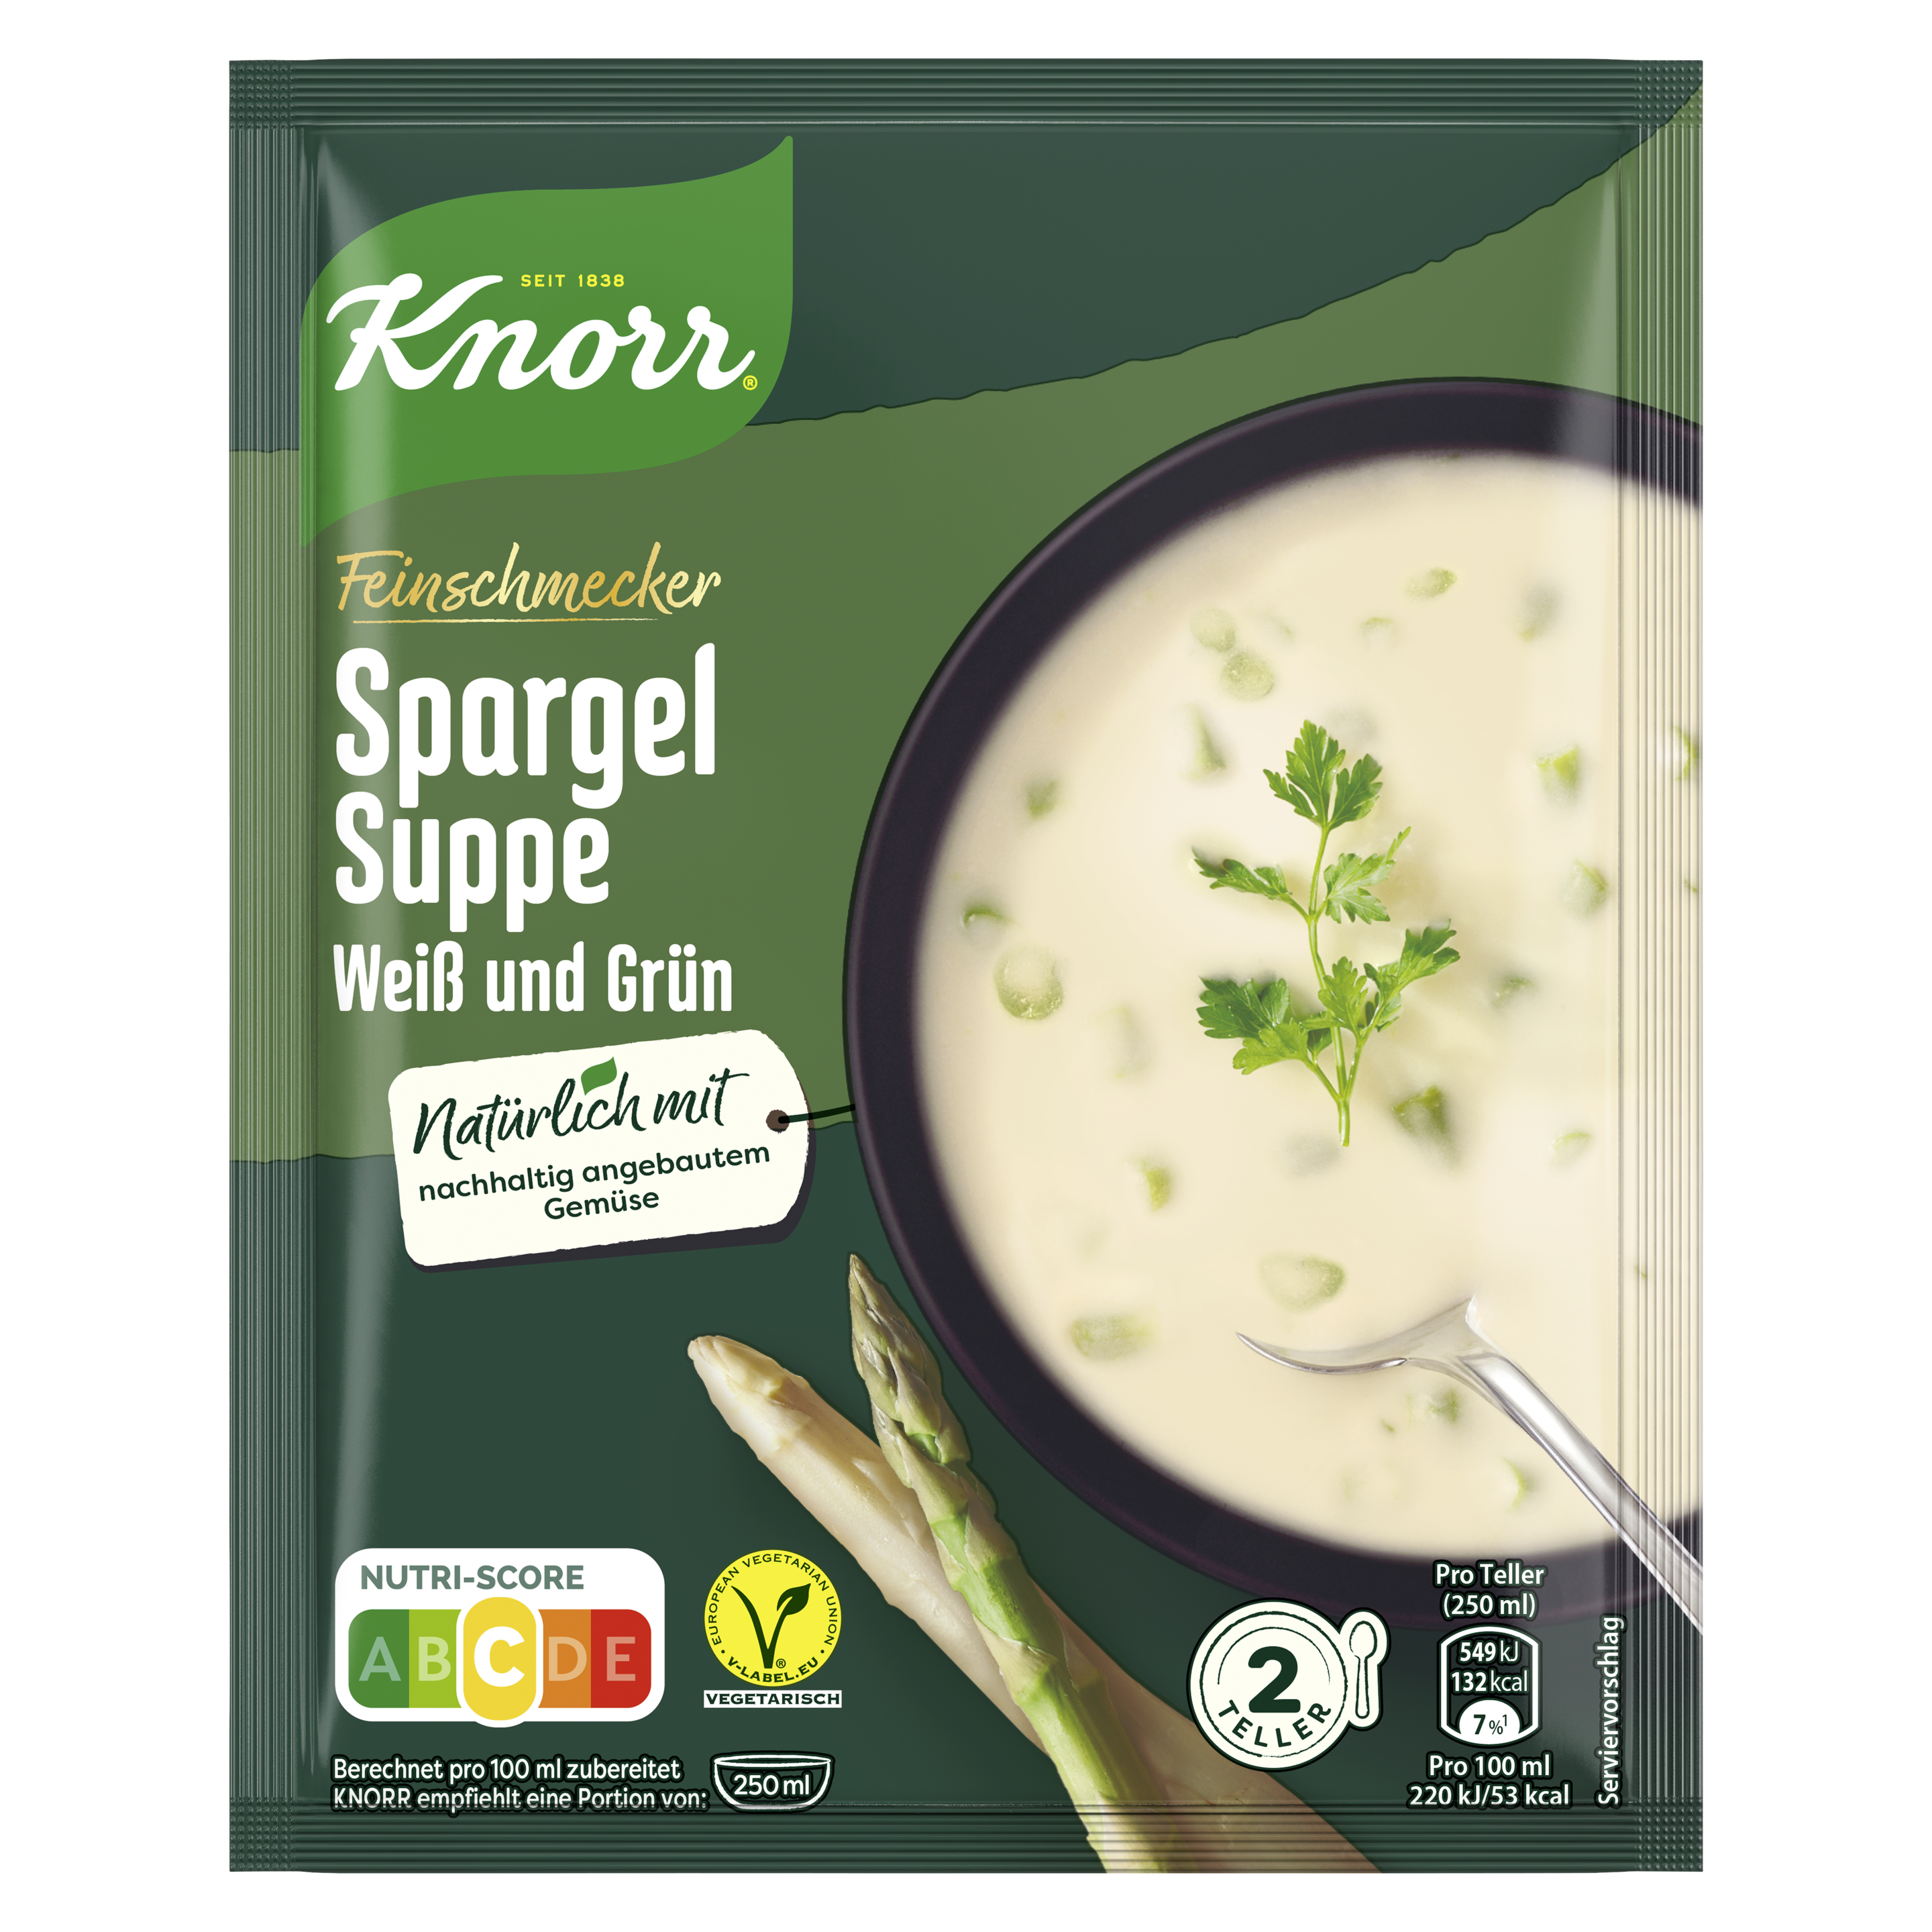 Knorr Feinschmecker Spargel Suppe weiß und grün 500ml Beutel